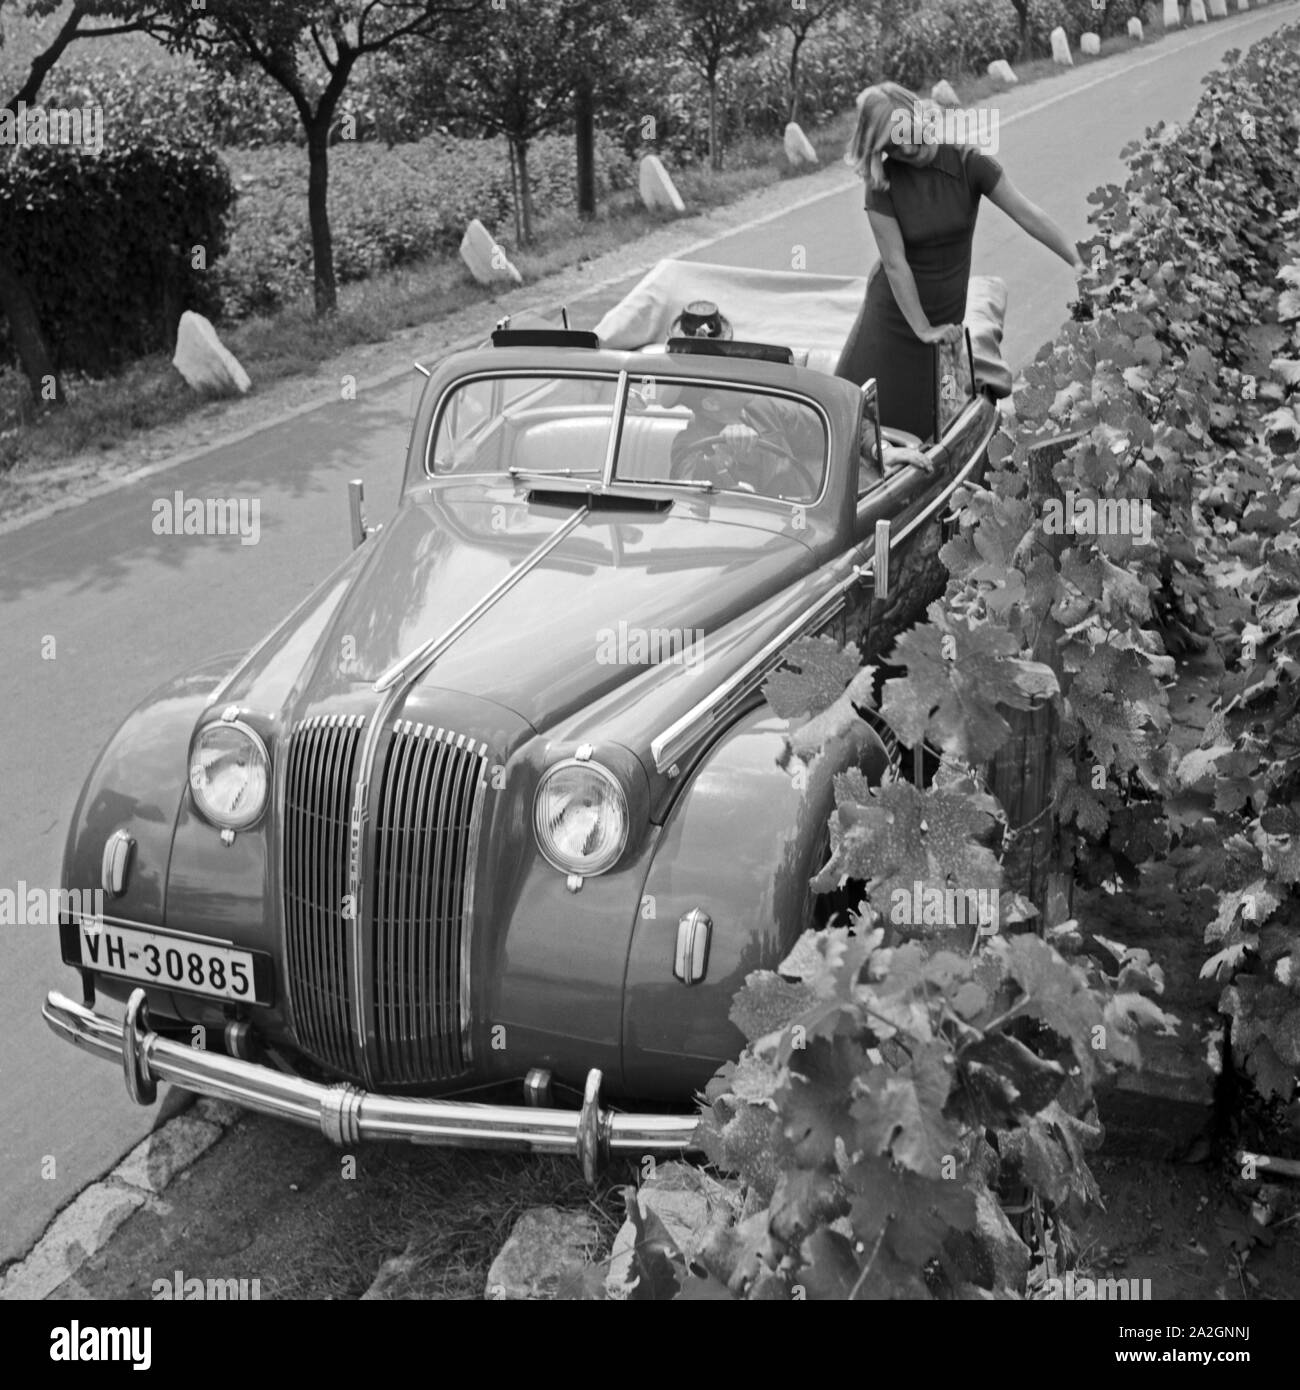 Eine junge Frau posiert in einem Opel Olympia Cabrio auf einer Straße vor einem Weinberg, Österreich 1930er Jahre. A young woman posing in an Opel Olympia convertible on a street in front of a vineyard, Austria 1930s. Stock Photo